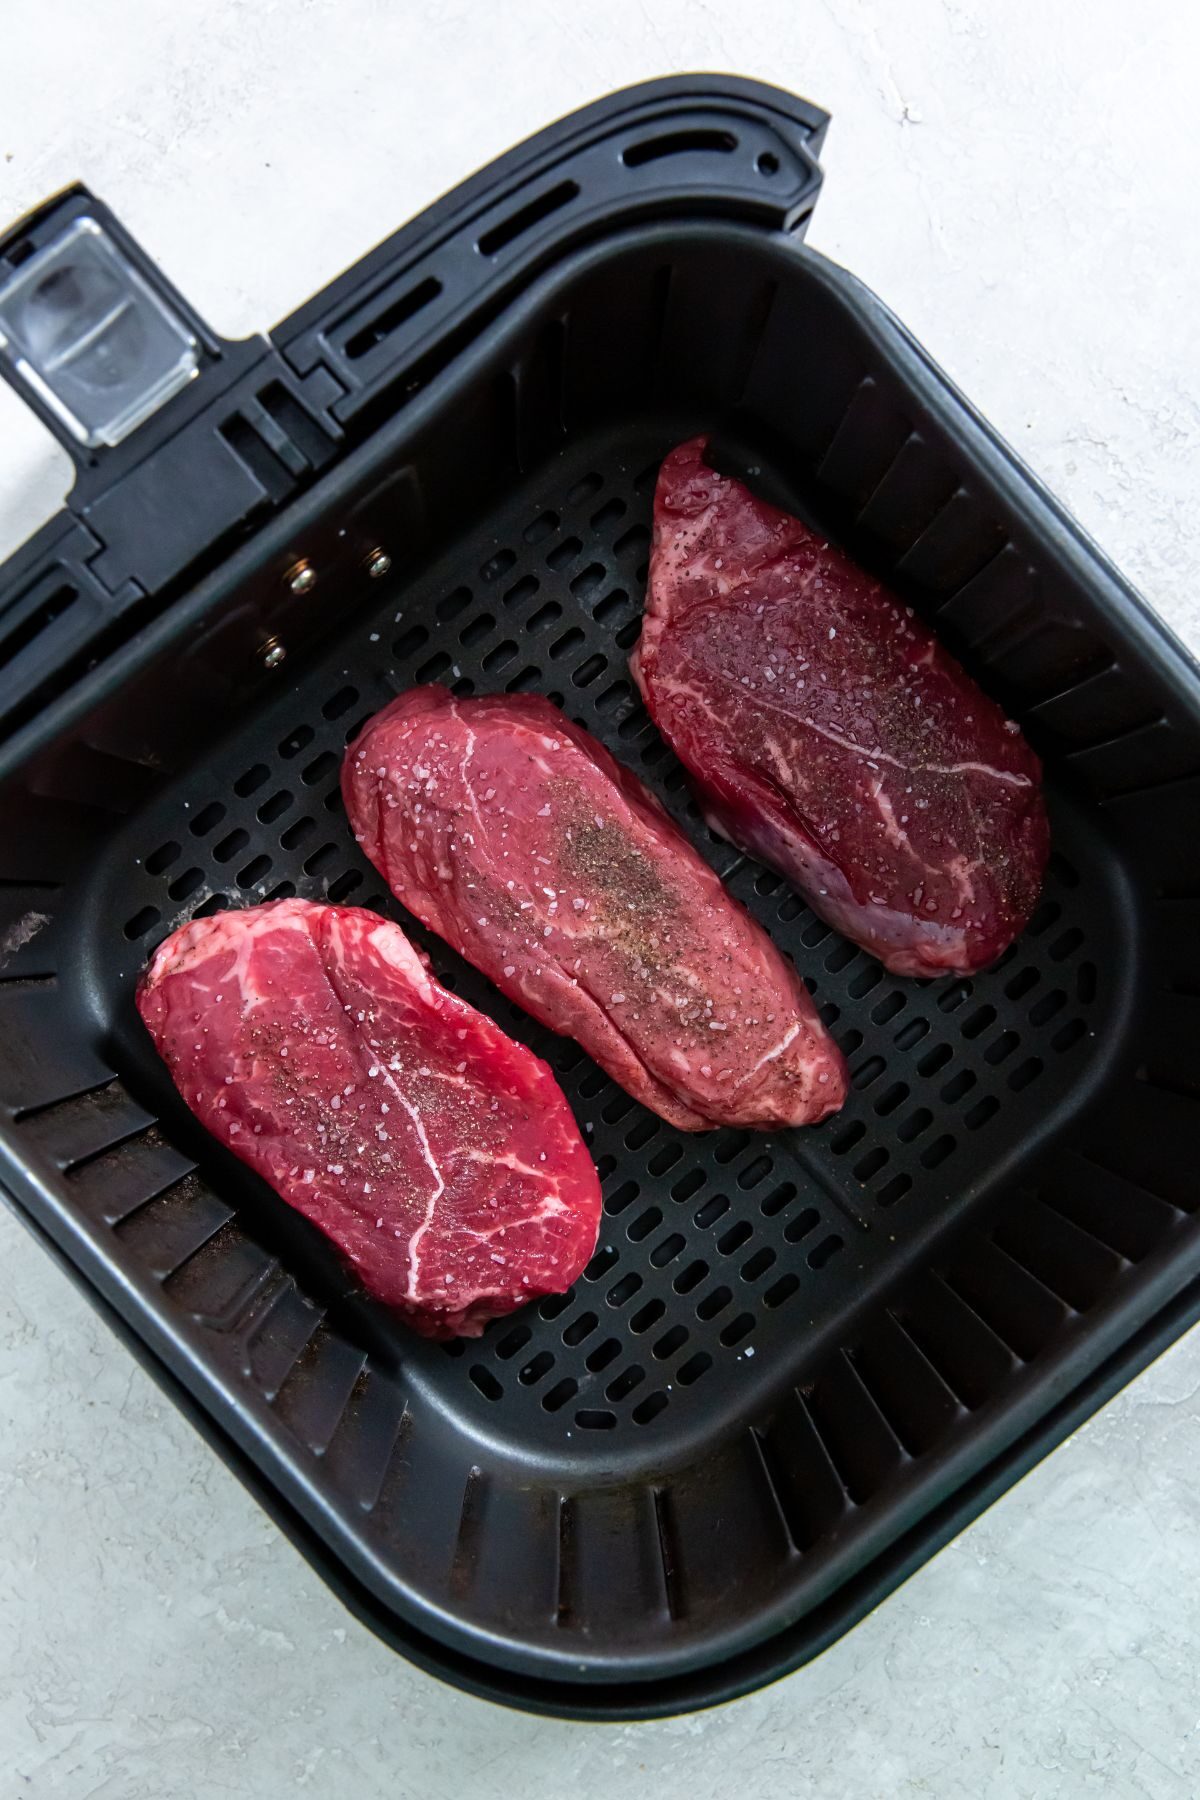 Three raw petite sirloin steaks in an air fryer.